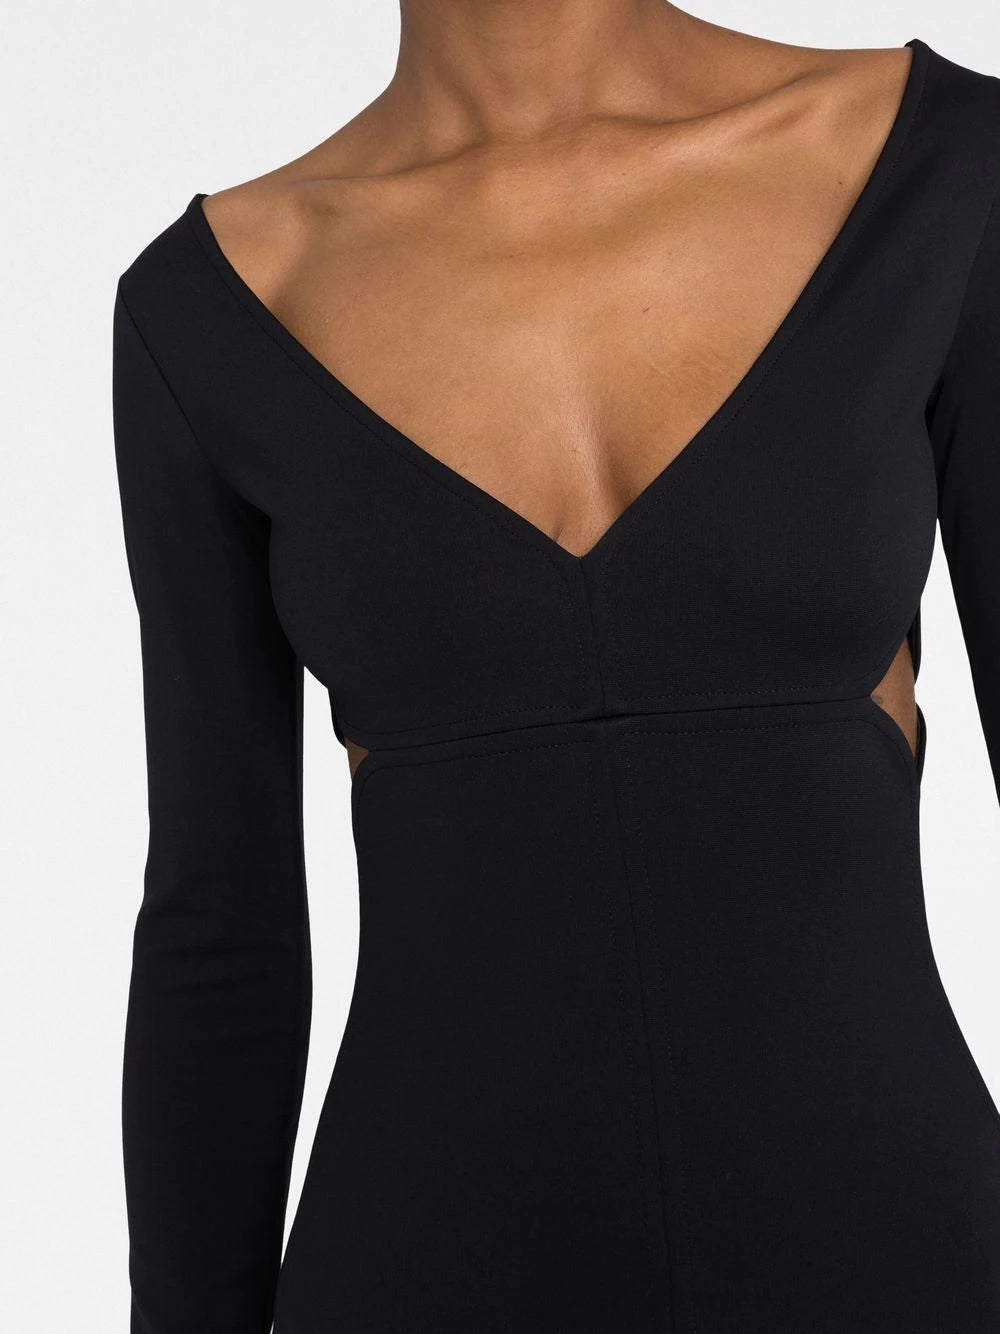 COURRÉGES WOMEN Cut-out Detail Ribbed Dress Black - MAISONDEFASHION.COM